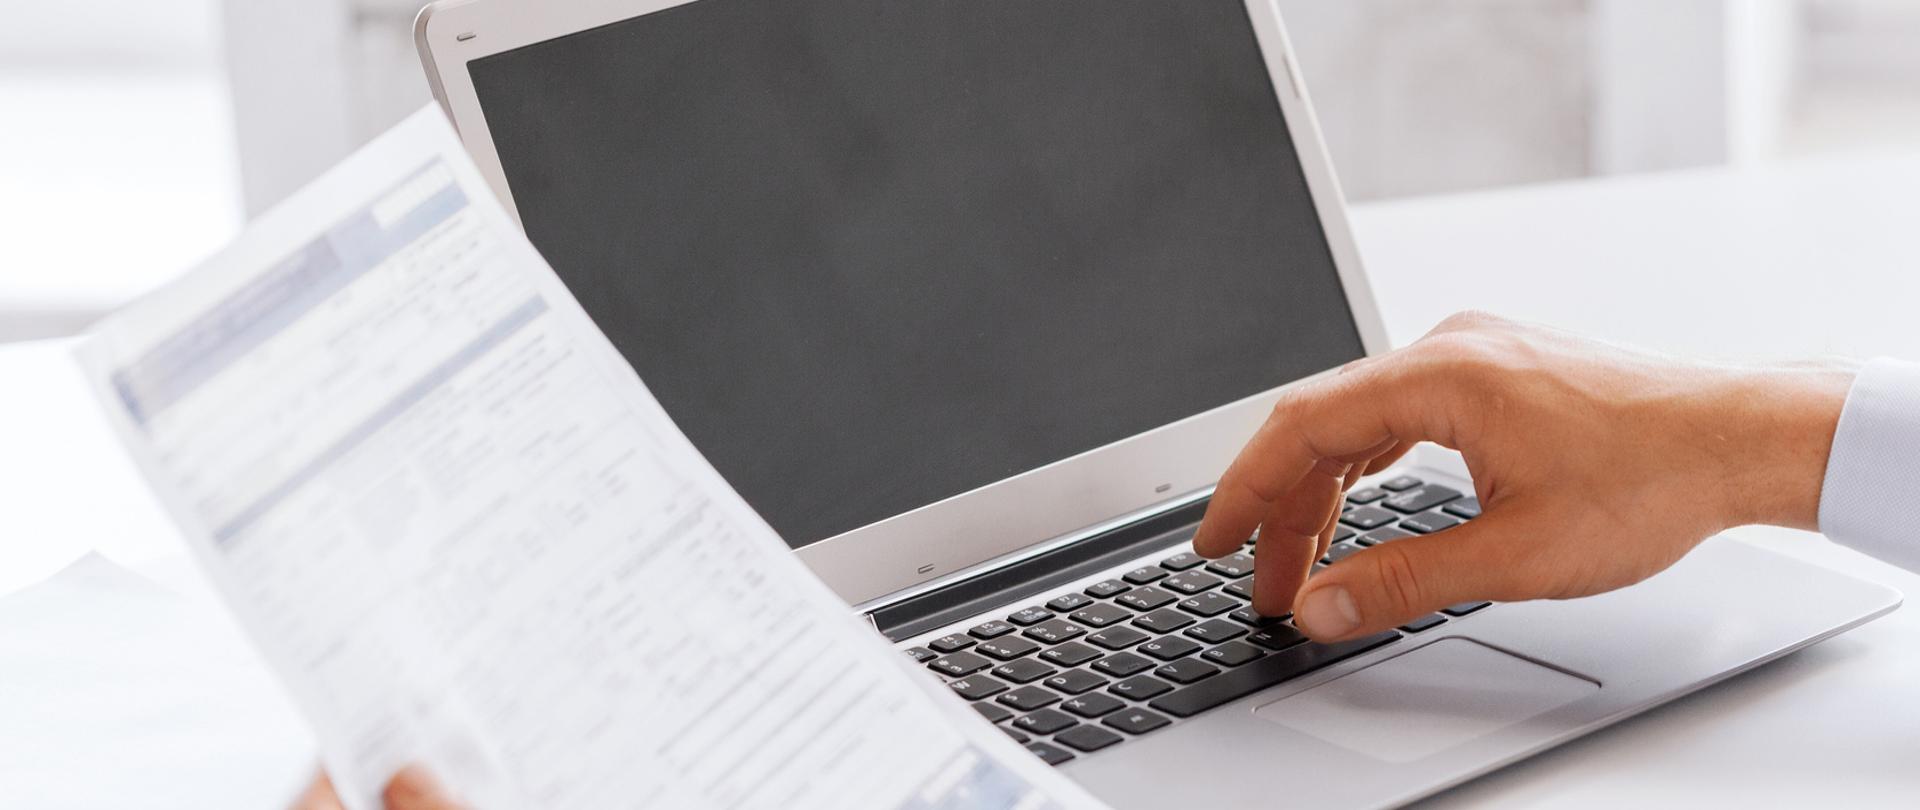 Mężczyzna przed laptopem, jedną rękę trzyma na klawiaturze, w drugiej ręce ma dokument